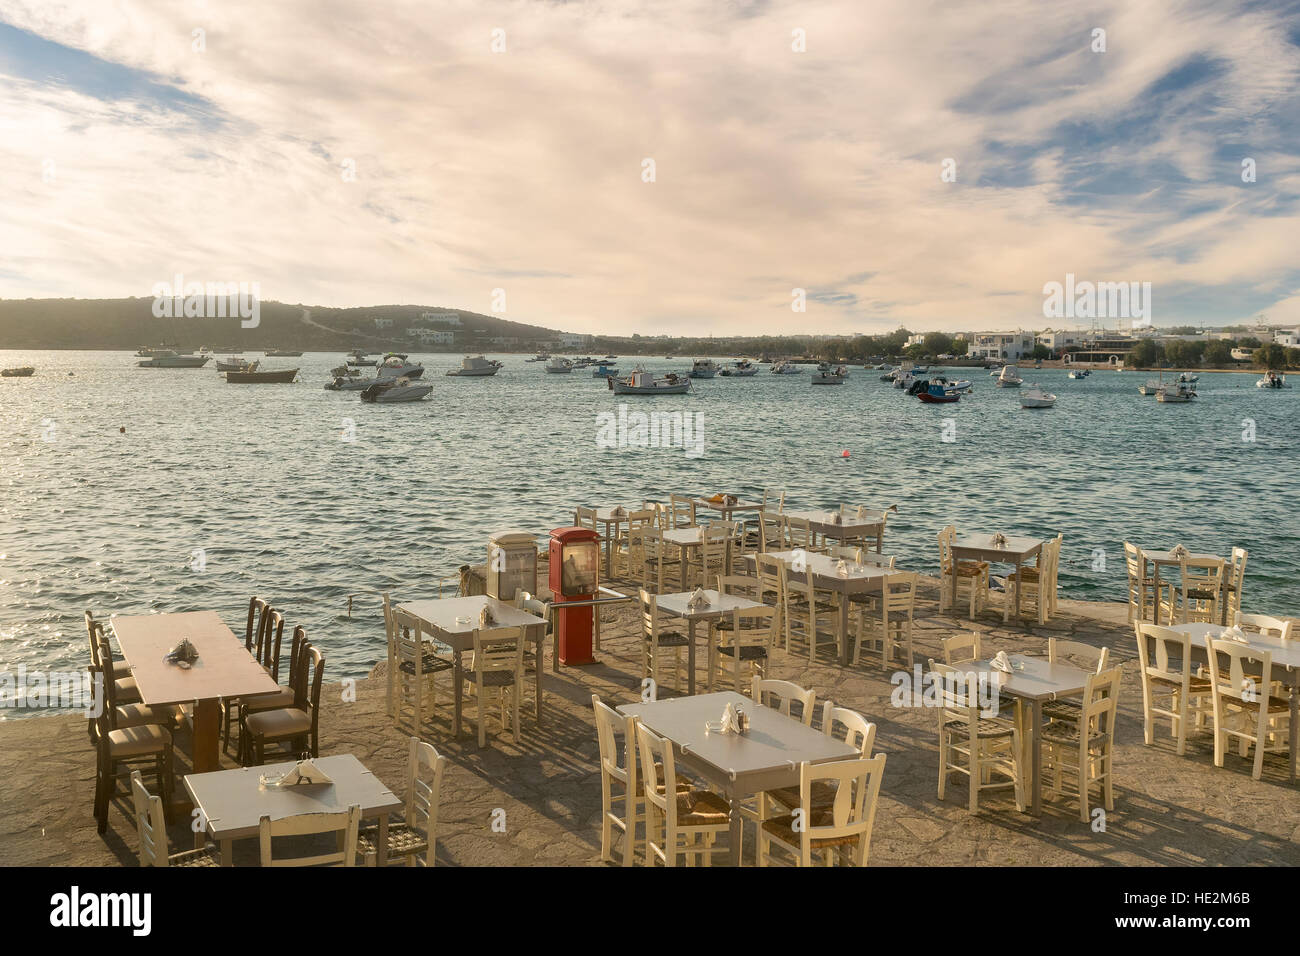 Greco ristoranti e taverne sono pronti ad accogliere i turisti al villaggio Alyki nell isola di Paros. Foto Stock